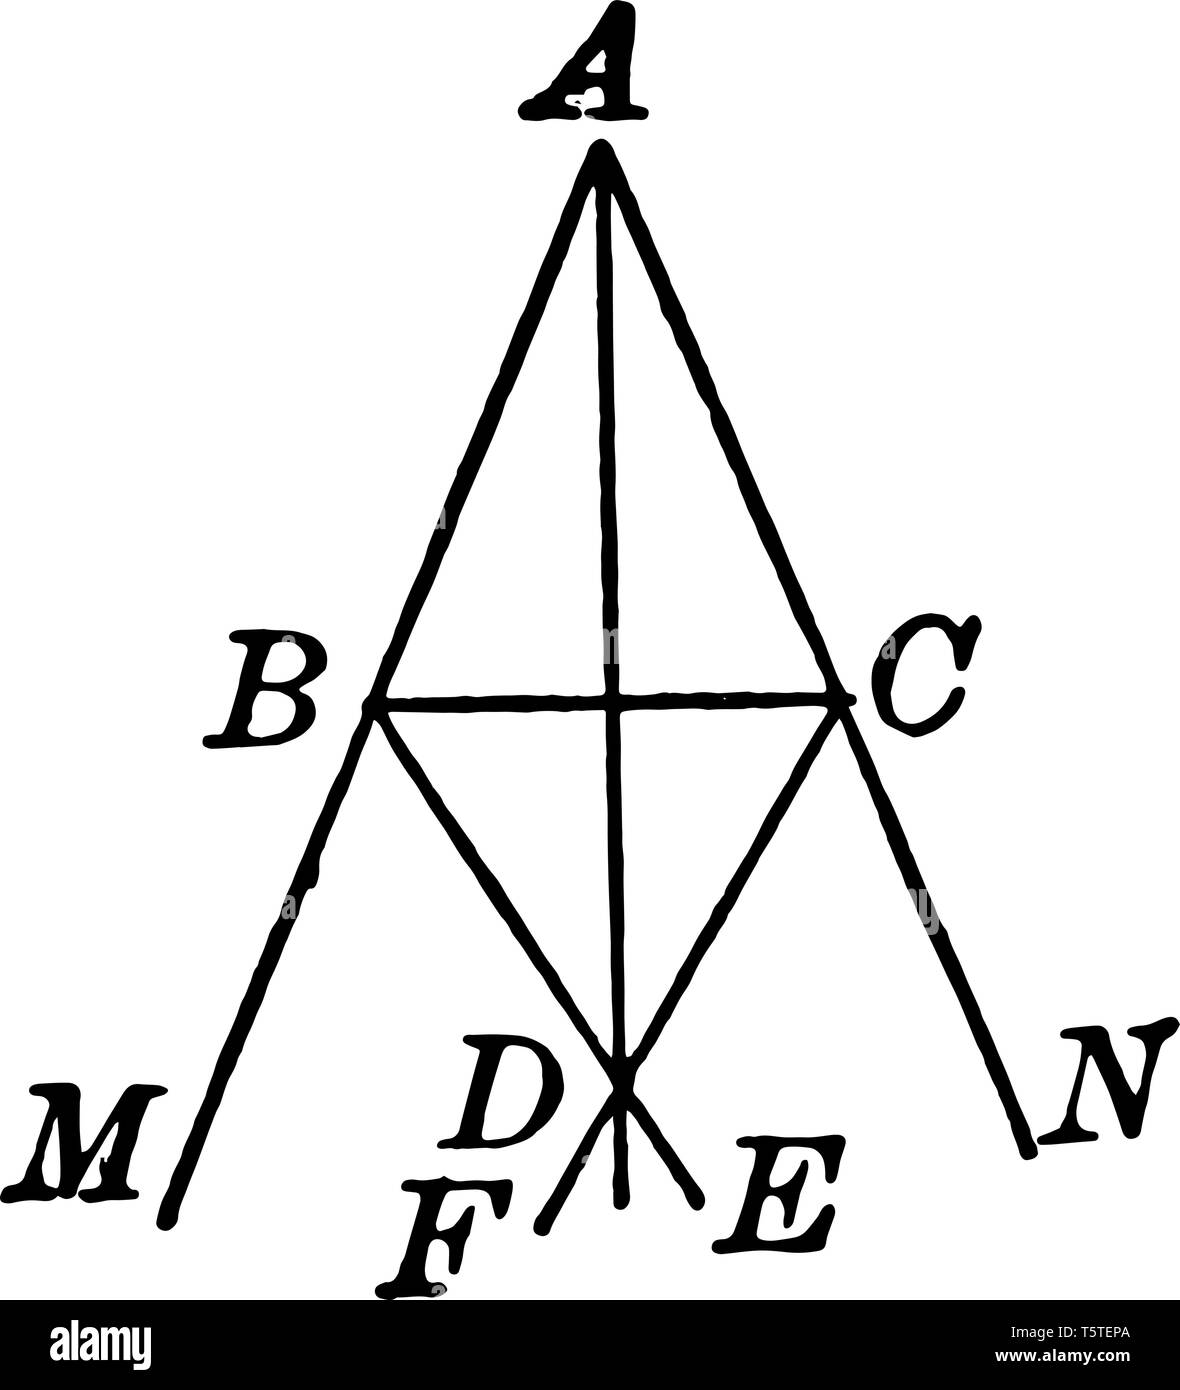 Un'immagine che mostra un triangolo. Bisettrici triangolo con angeli verticale, vintage disegno della linea di incisione o illustrazione. Illustrazione Vettoriale